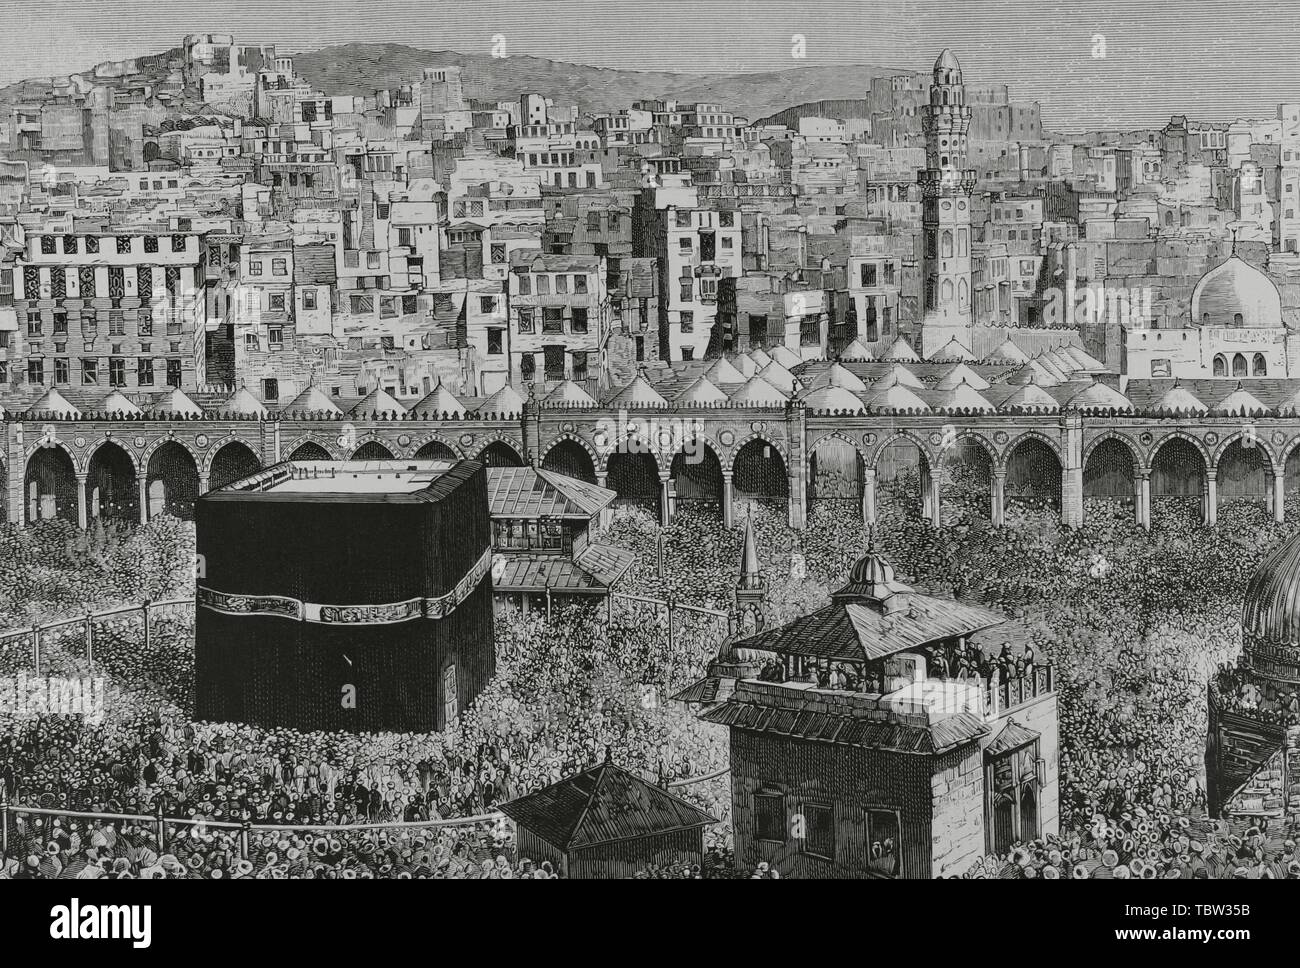 Arabia Saudí. La Meca. Vista general de la ciudad. En el centro de la mezquita Masjid al-Haram, la Kaaba, que alberga la "piedra negra". Grabado de La Ilustración española y americana, 15 de abril de 1882. Detalle. Foto de stock